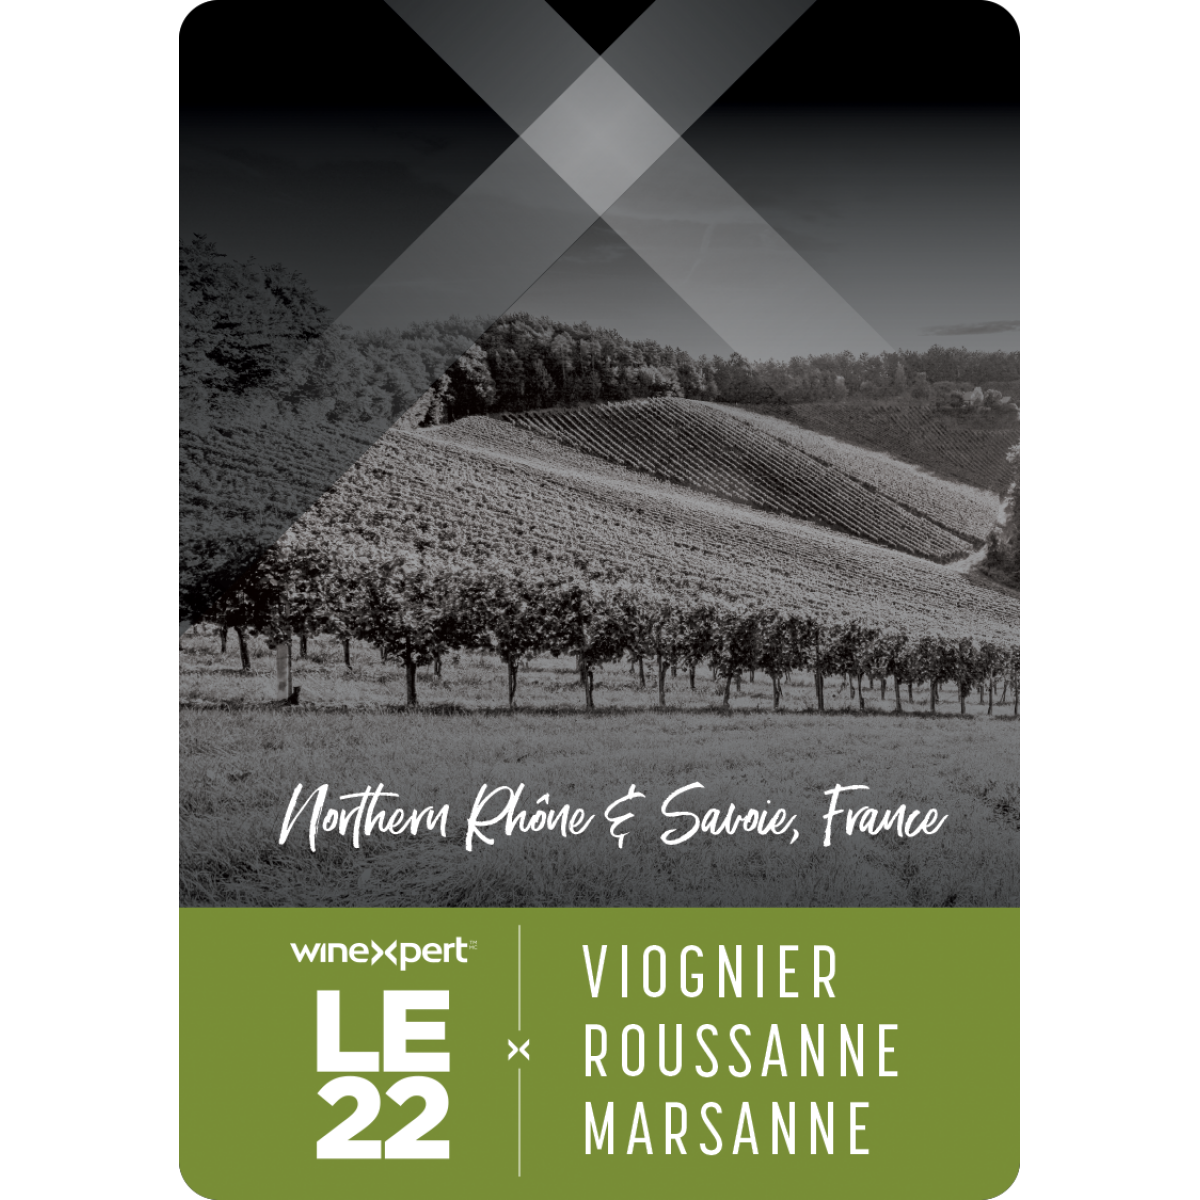 VIOGNIER ROUSSANNE MARSANNE - WINEXPERT LE22 WINE